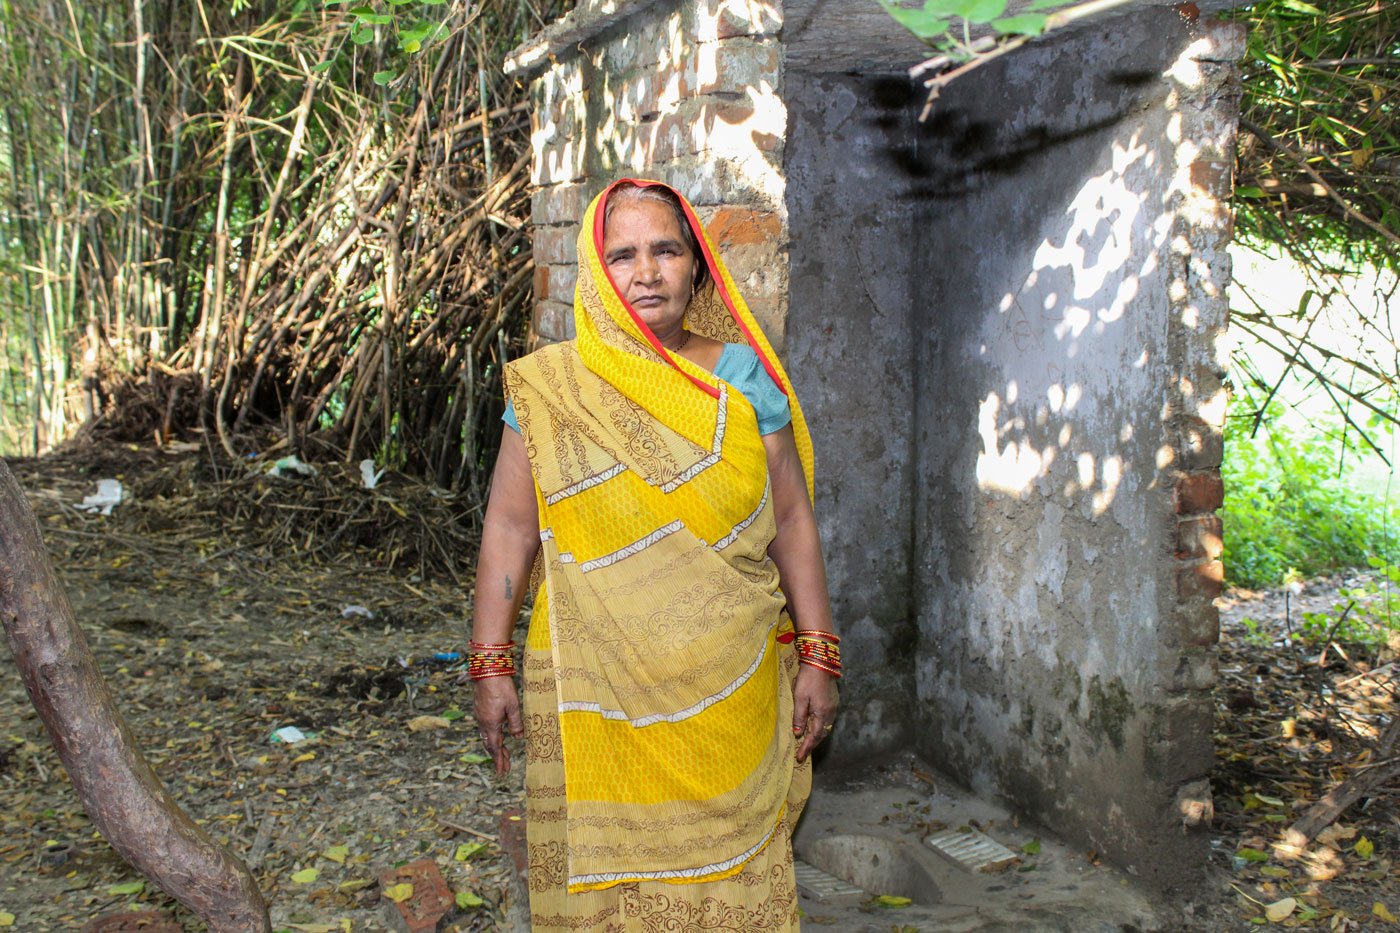 Bindeshvari shows her toilet which has no door